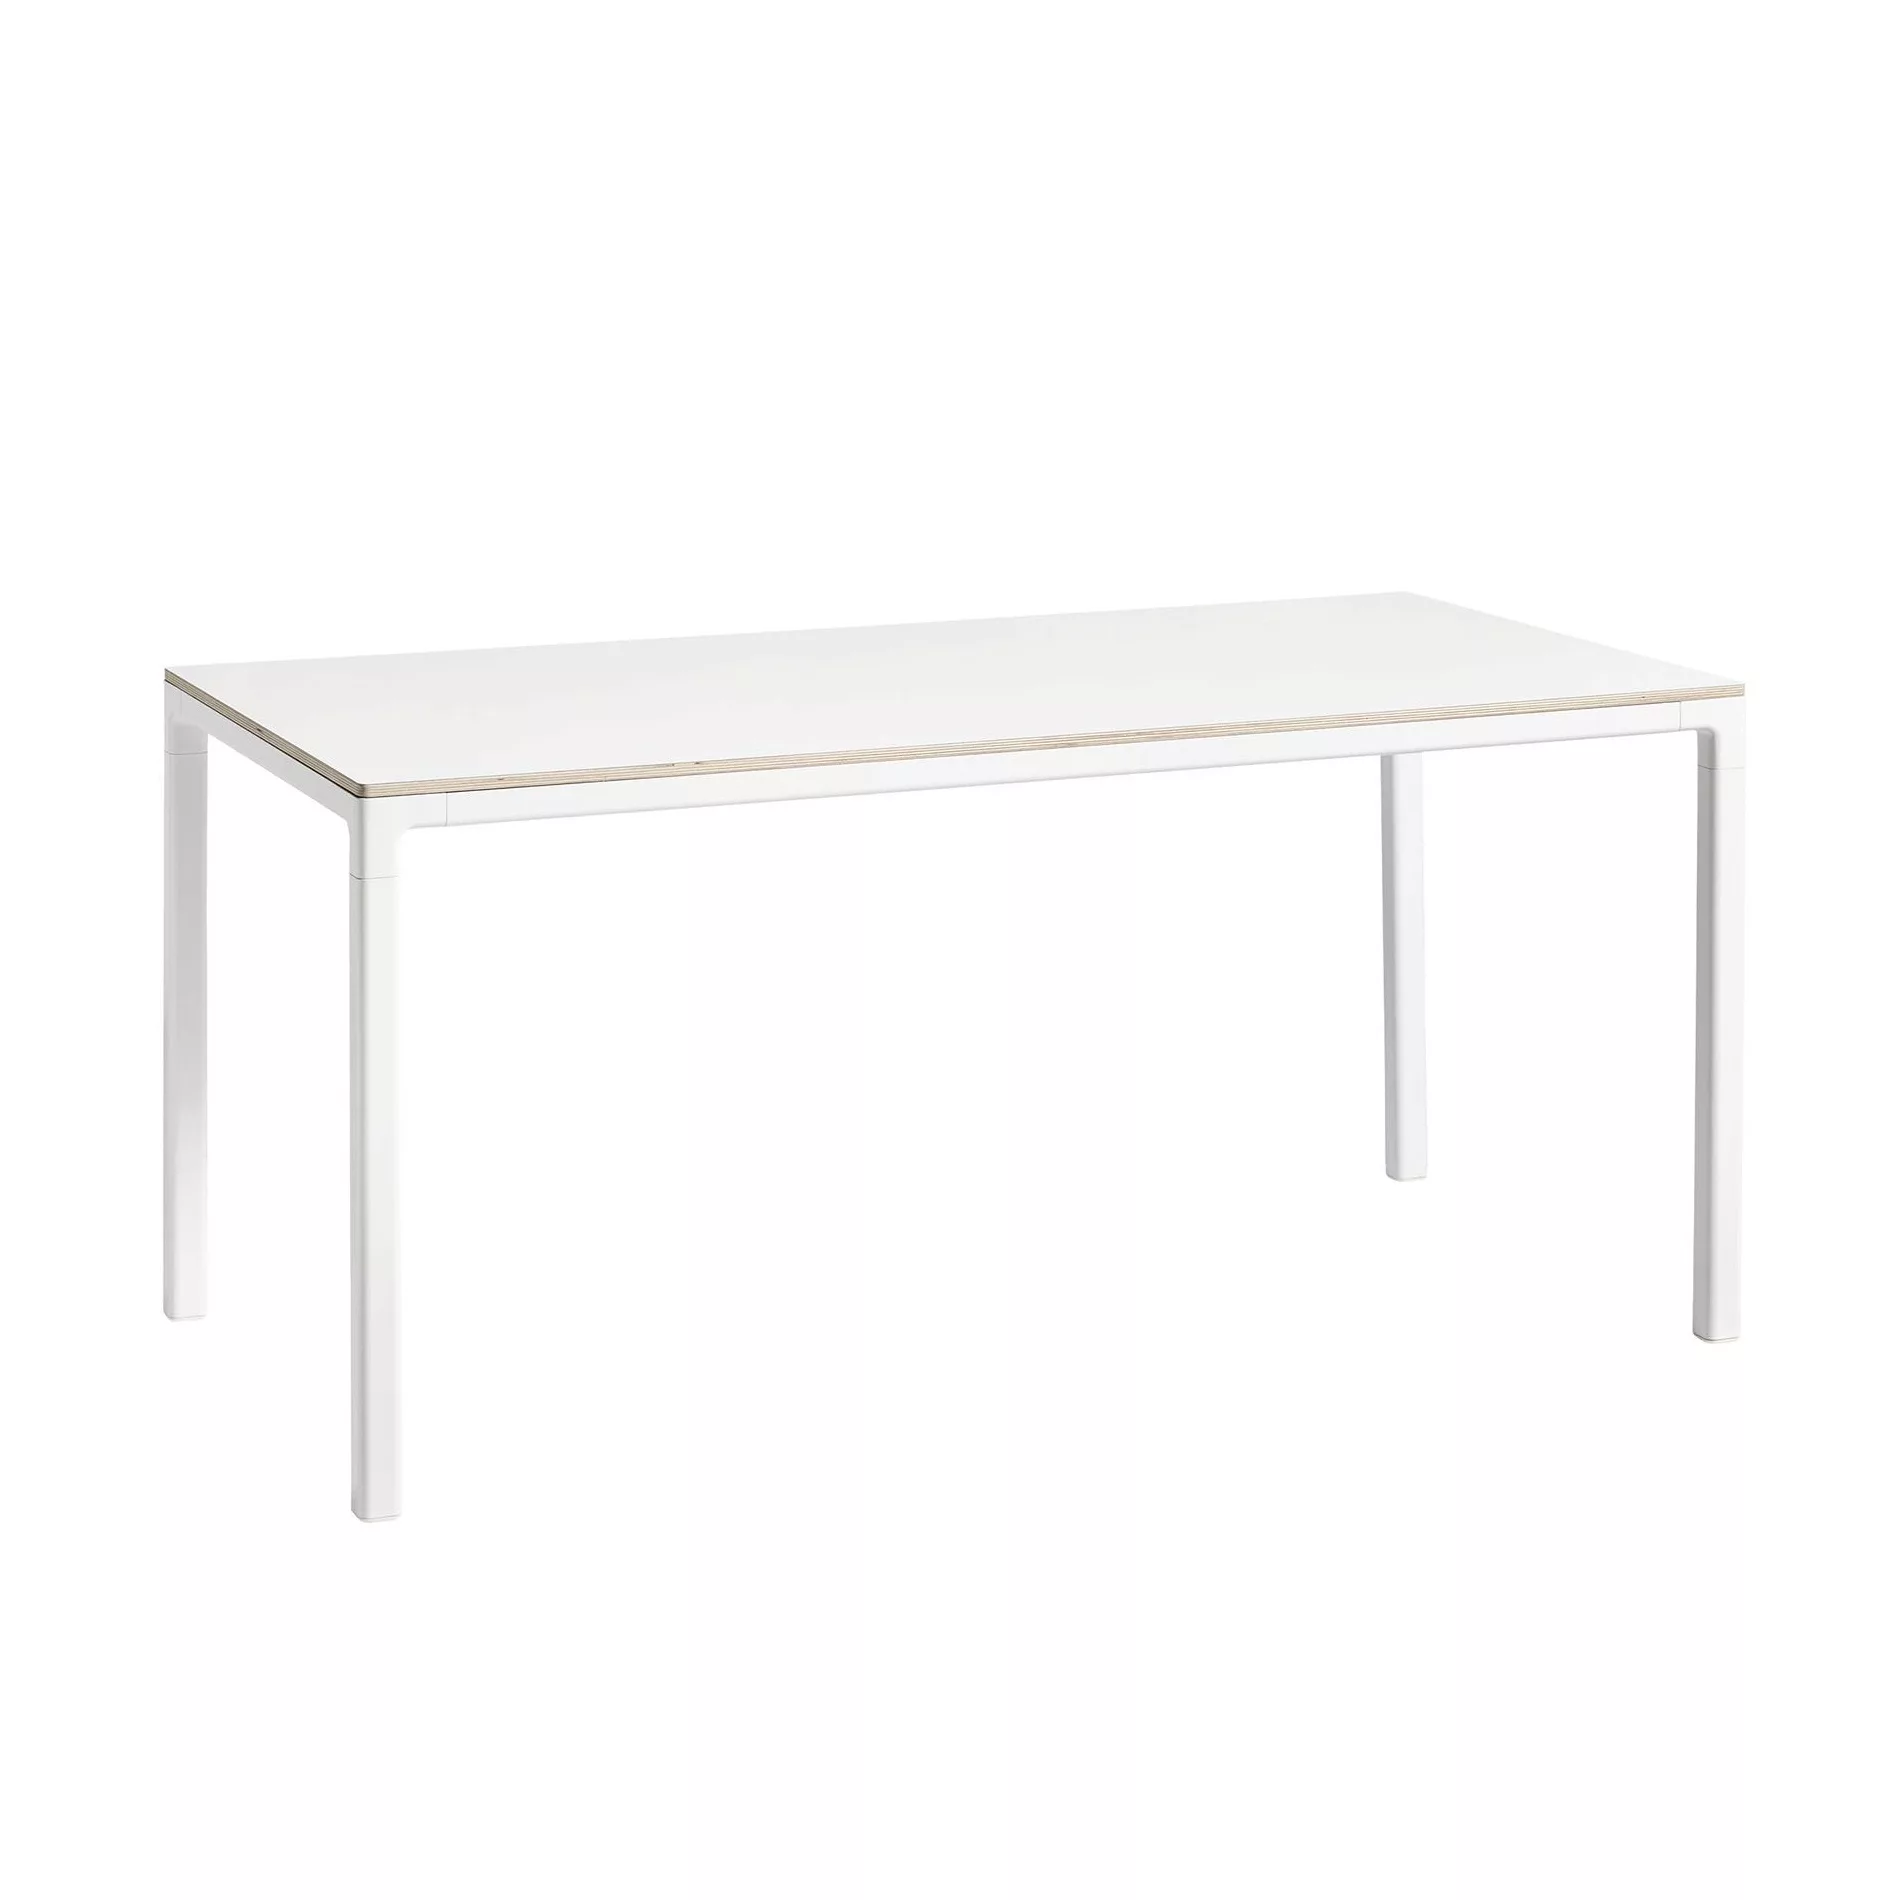 HAY - T12 Tisch Laminat 160x80cm - weiß/Laminat mit Sperrholzkante/Gestell günstig online kaufen